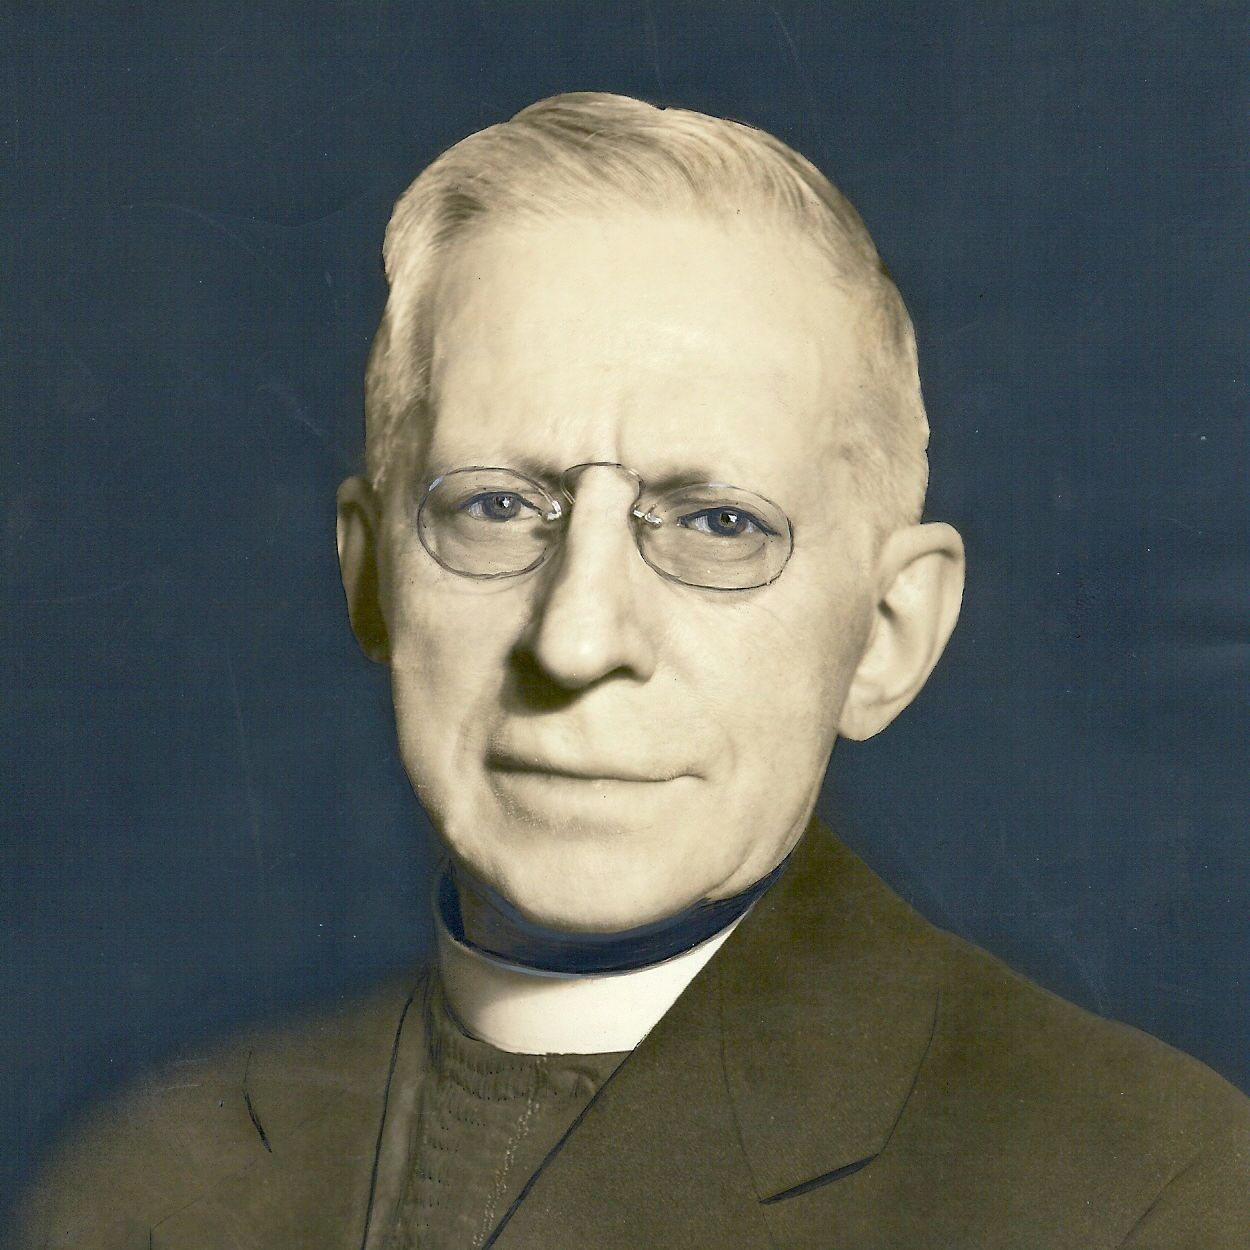 Rev. Joseph Stadelman